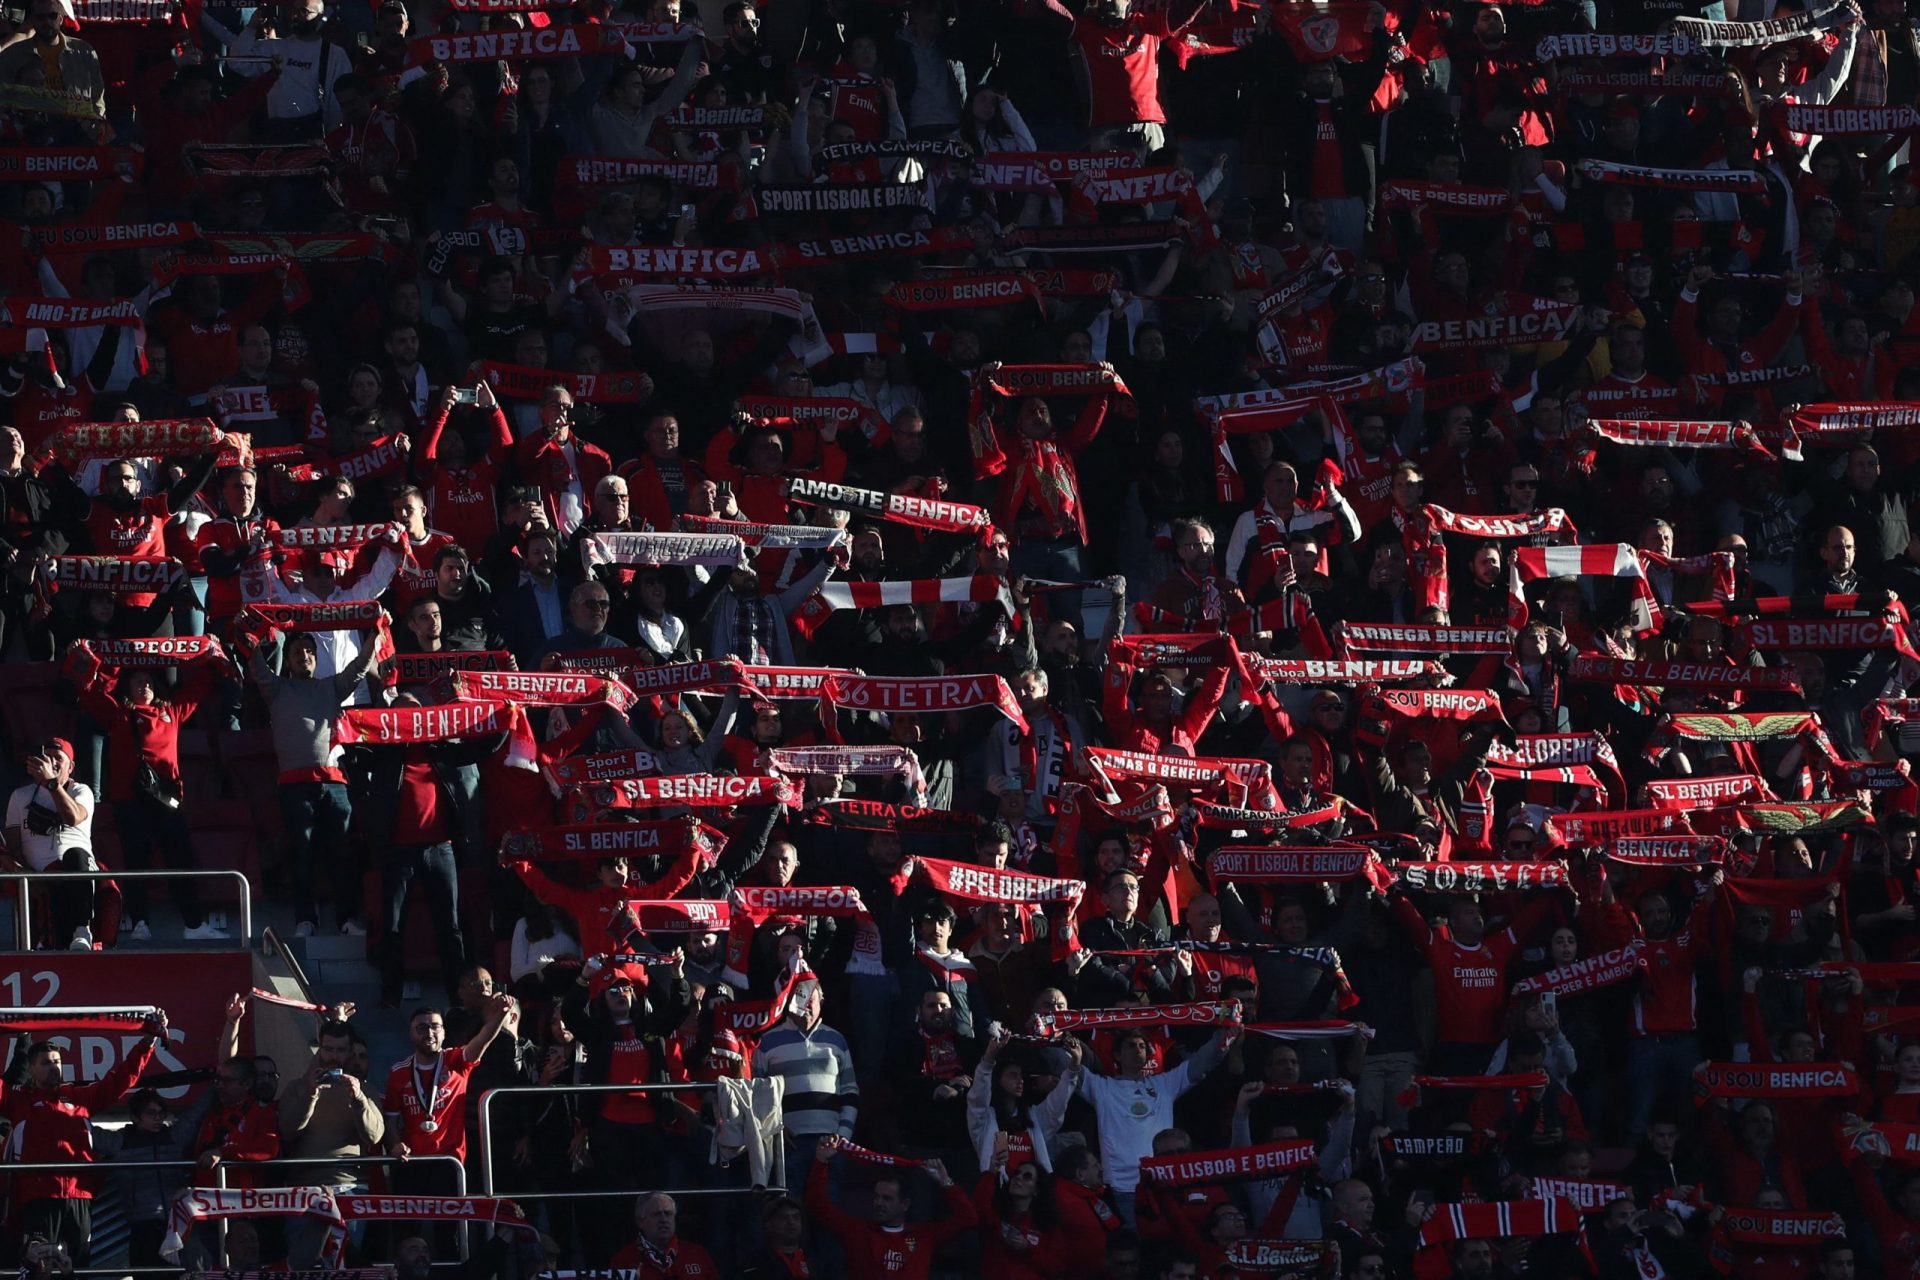 Bilhetes para o jogo do Benfica em Milão esgotaram em meia hora